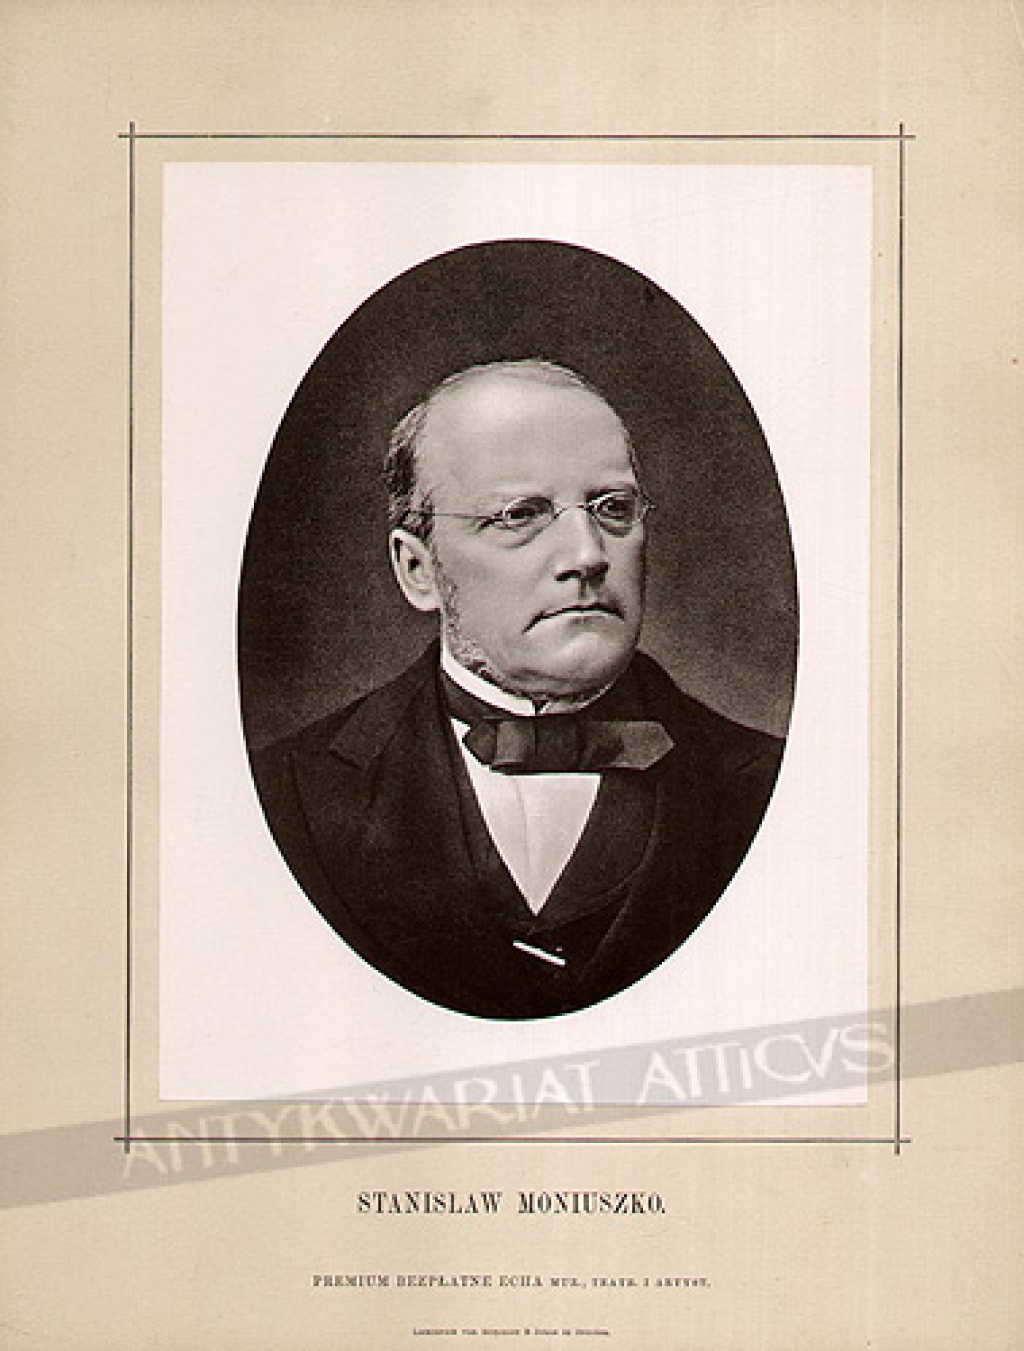 [światłodruk, ok. 1900] Stanisław Moniuszko